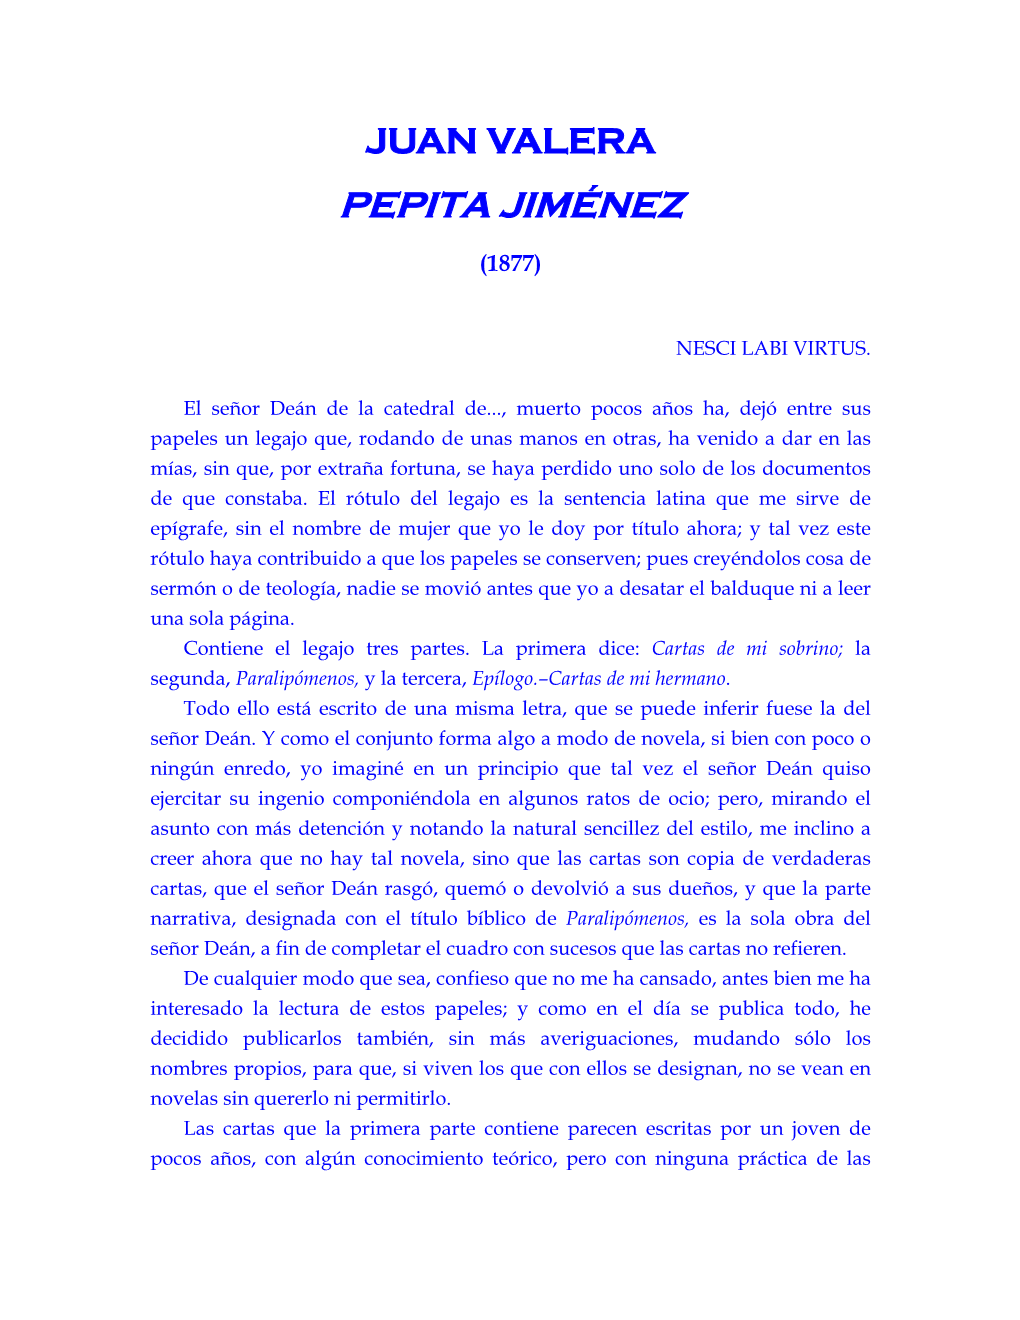 JUAN VALERA, Pepita Jiménez